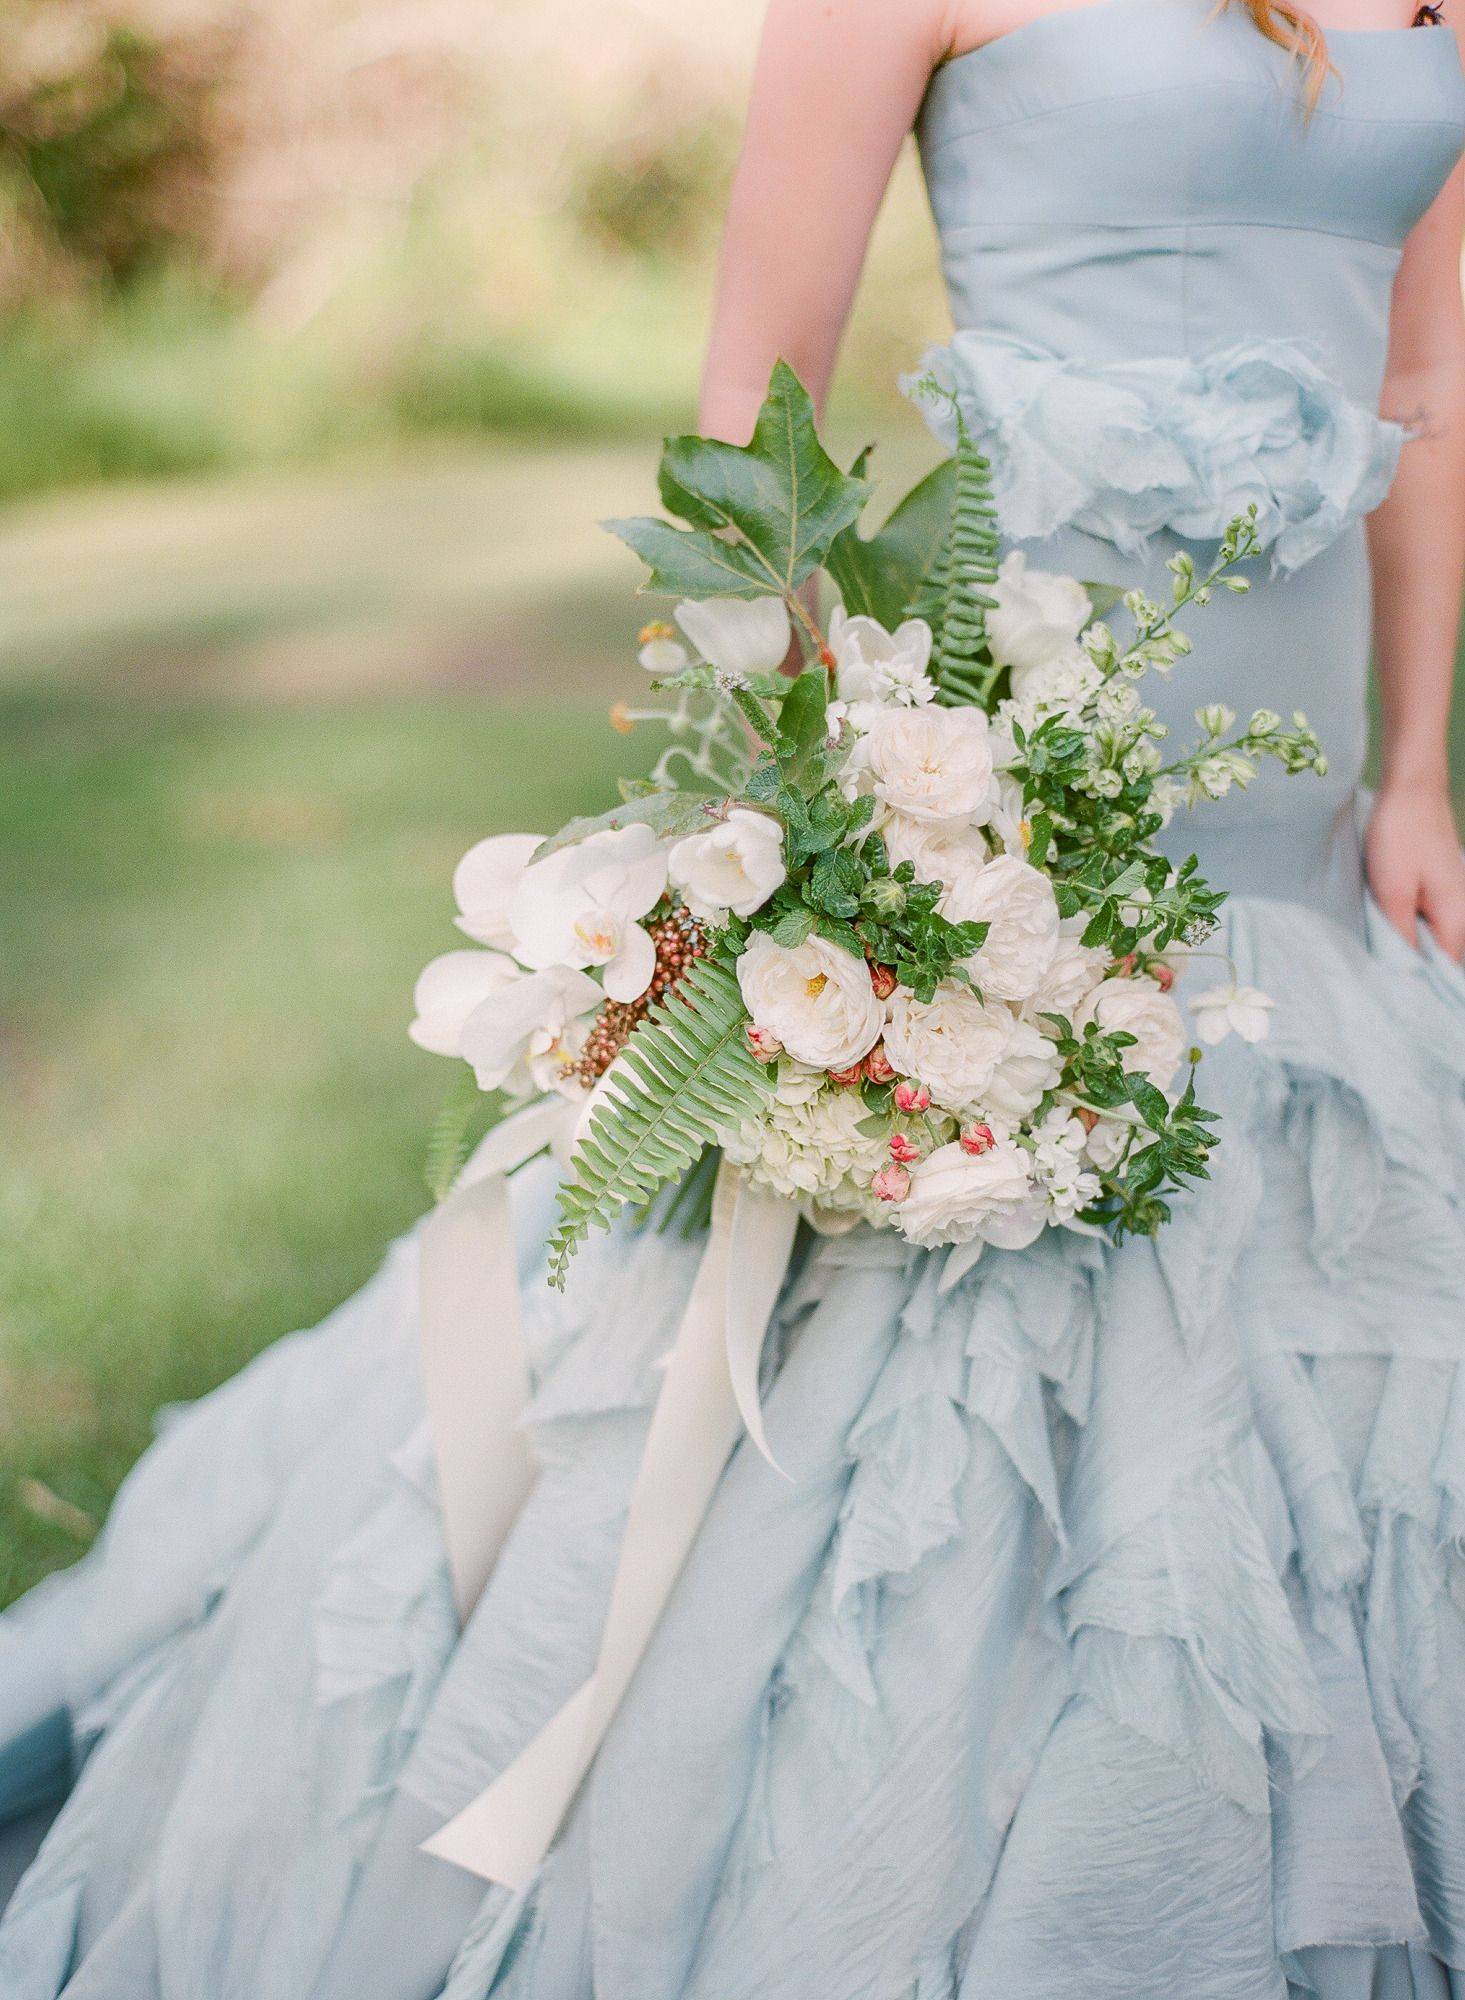 Свадьба в голубом цвете или голубая свадьба - идеи оформления, образ жениха и невесты, фото